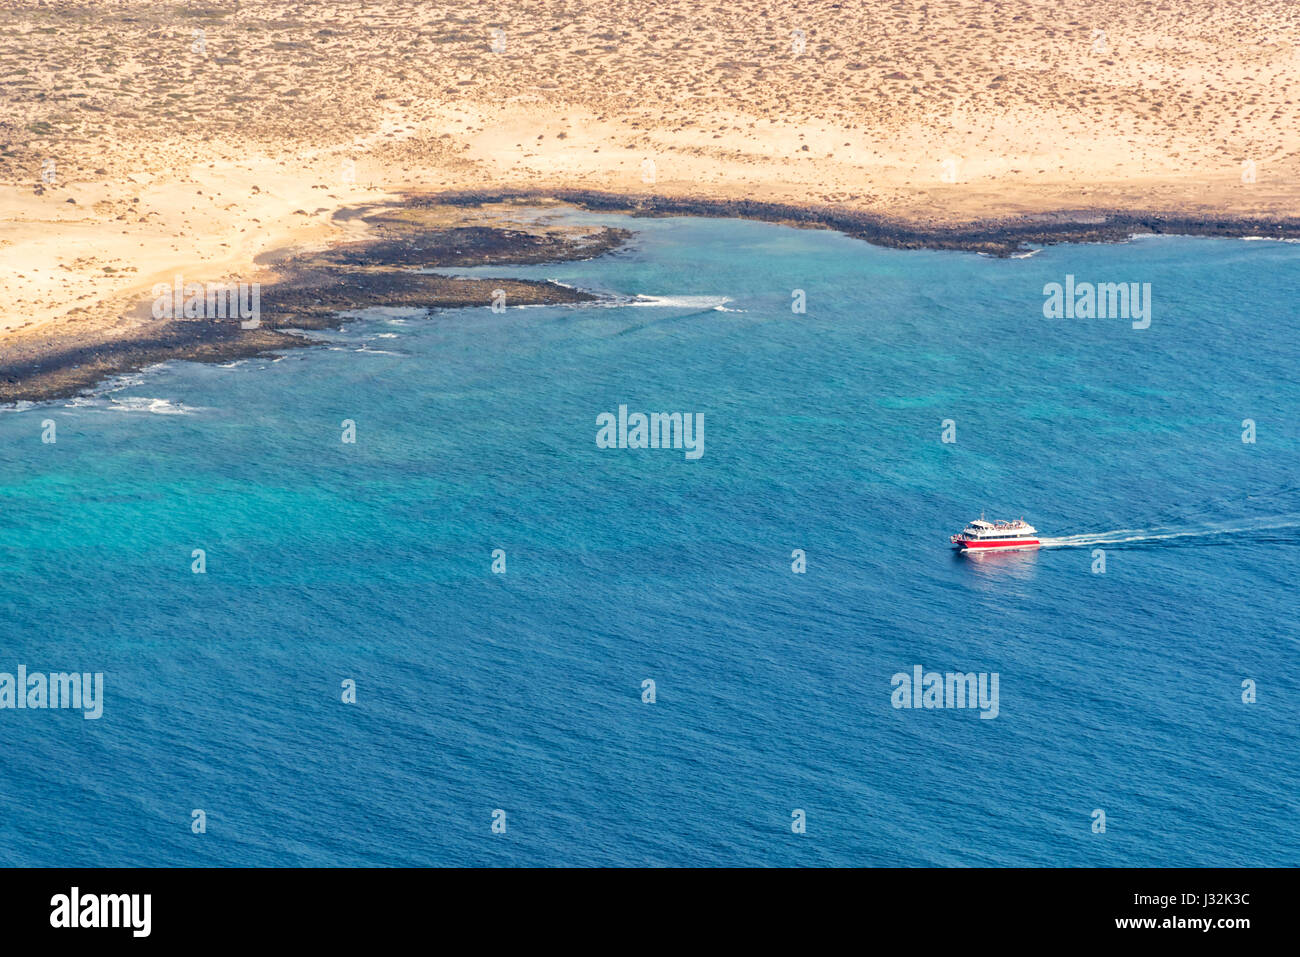 Vue aérienne d'un bateau dans l'océan avec la côte de la Graciose dans l'île de Lanzarote, îles Canaries, Espagne Banque D'Images